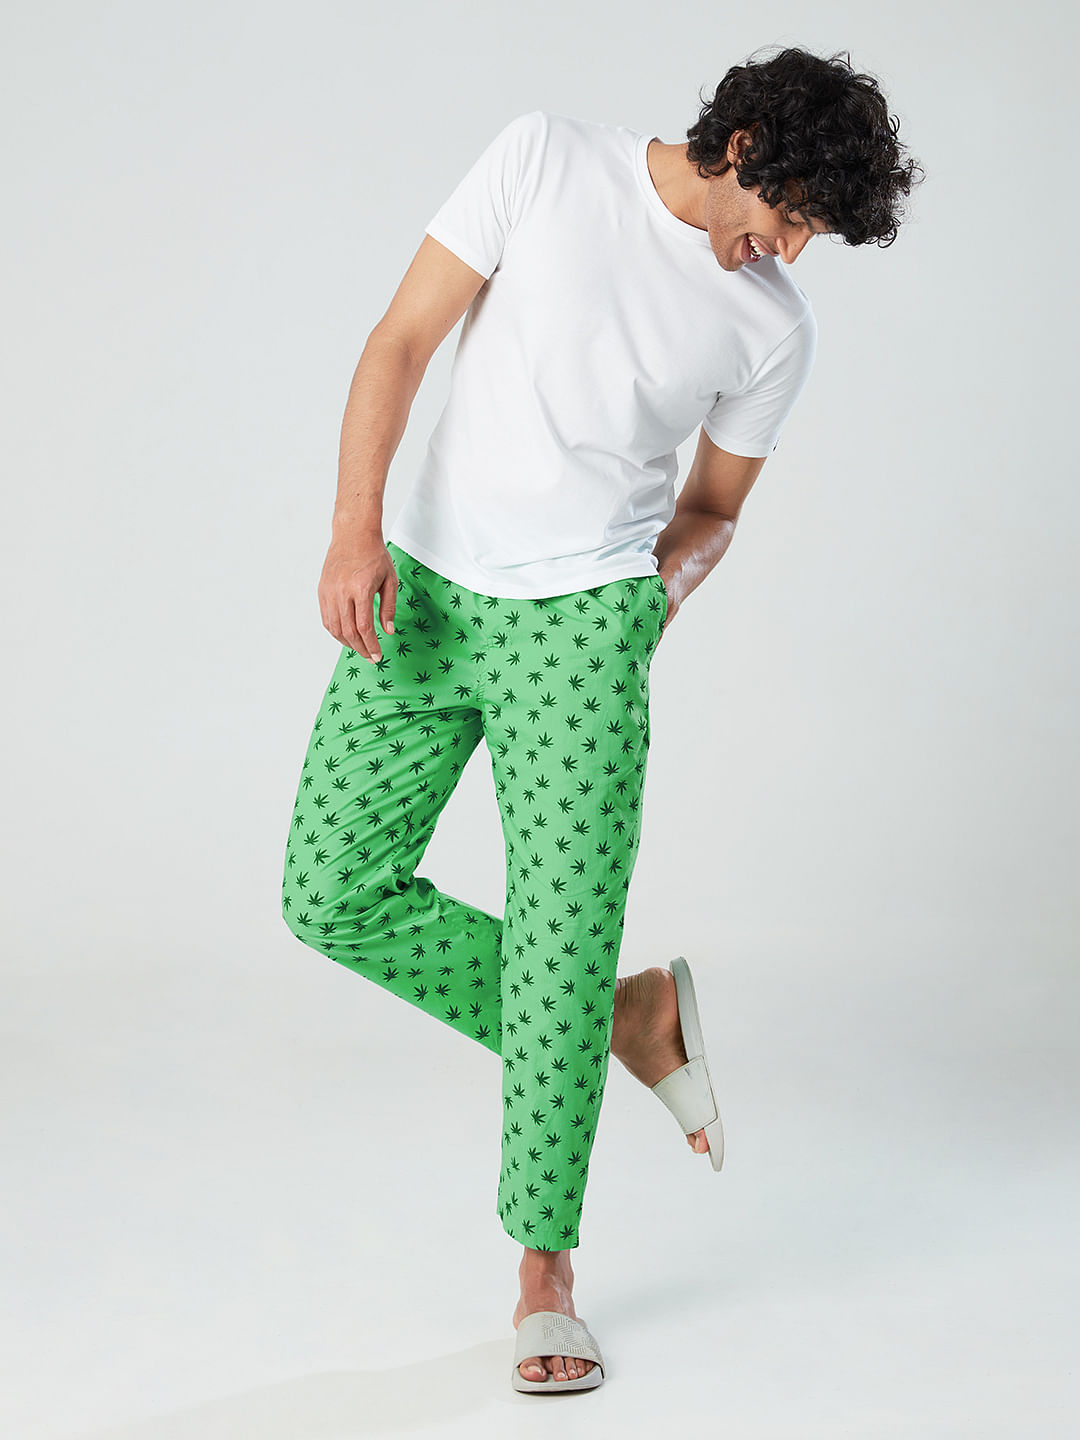 Buy Official Reggae Leaf Pattern Mens Pajamas Online